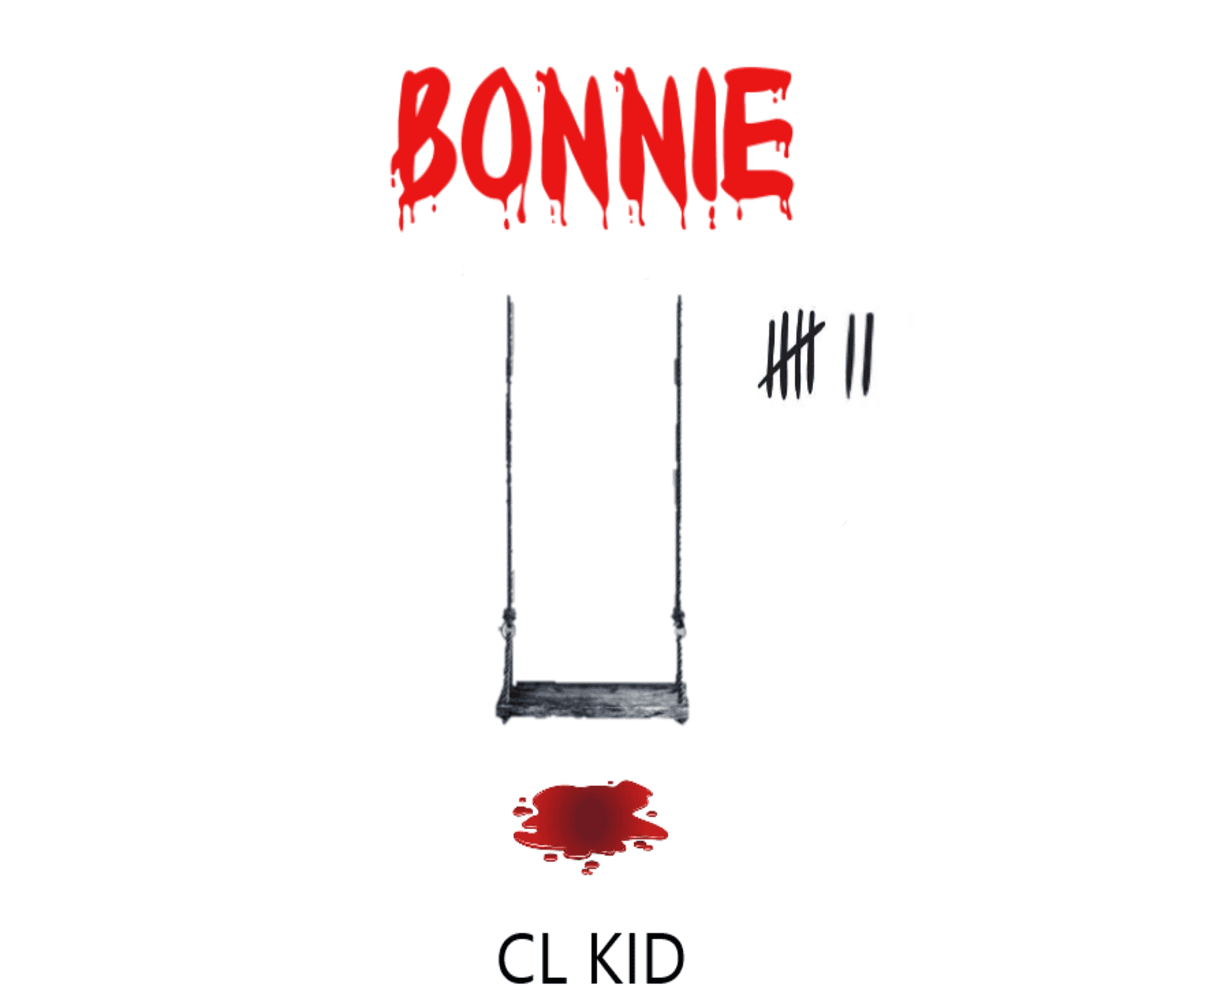 Bonnie - CL KID